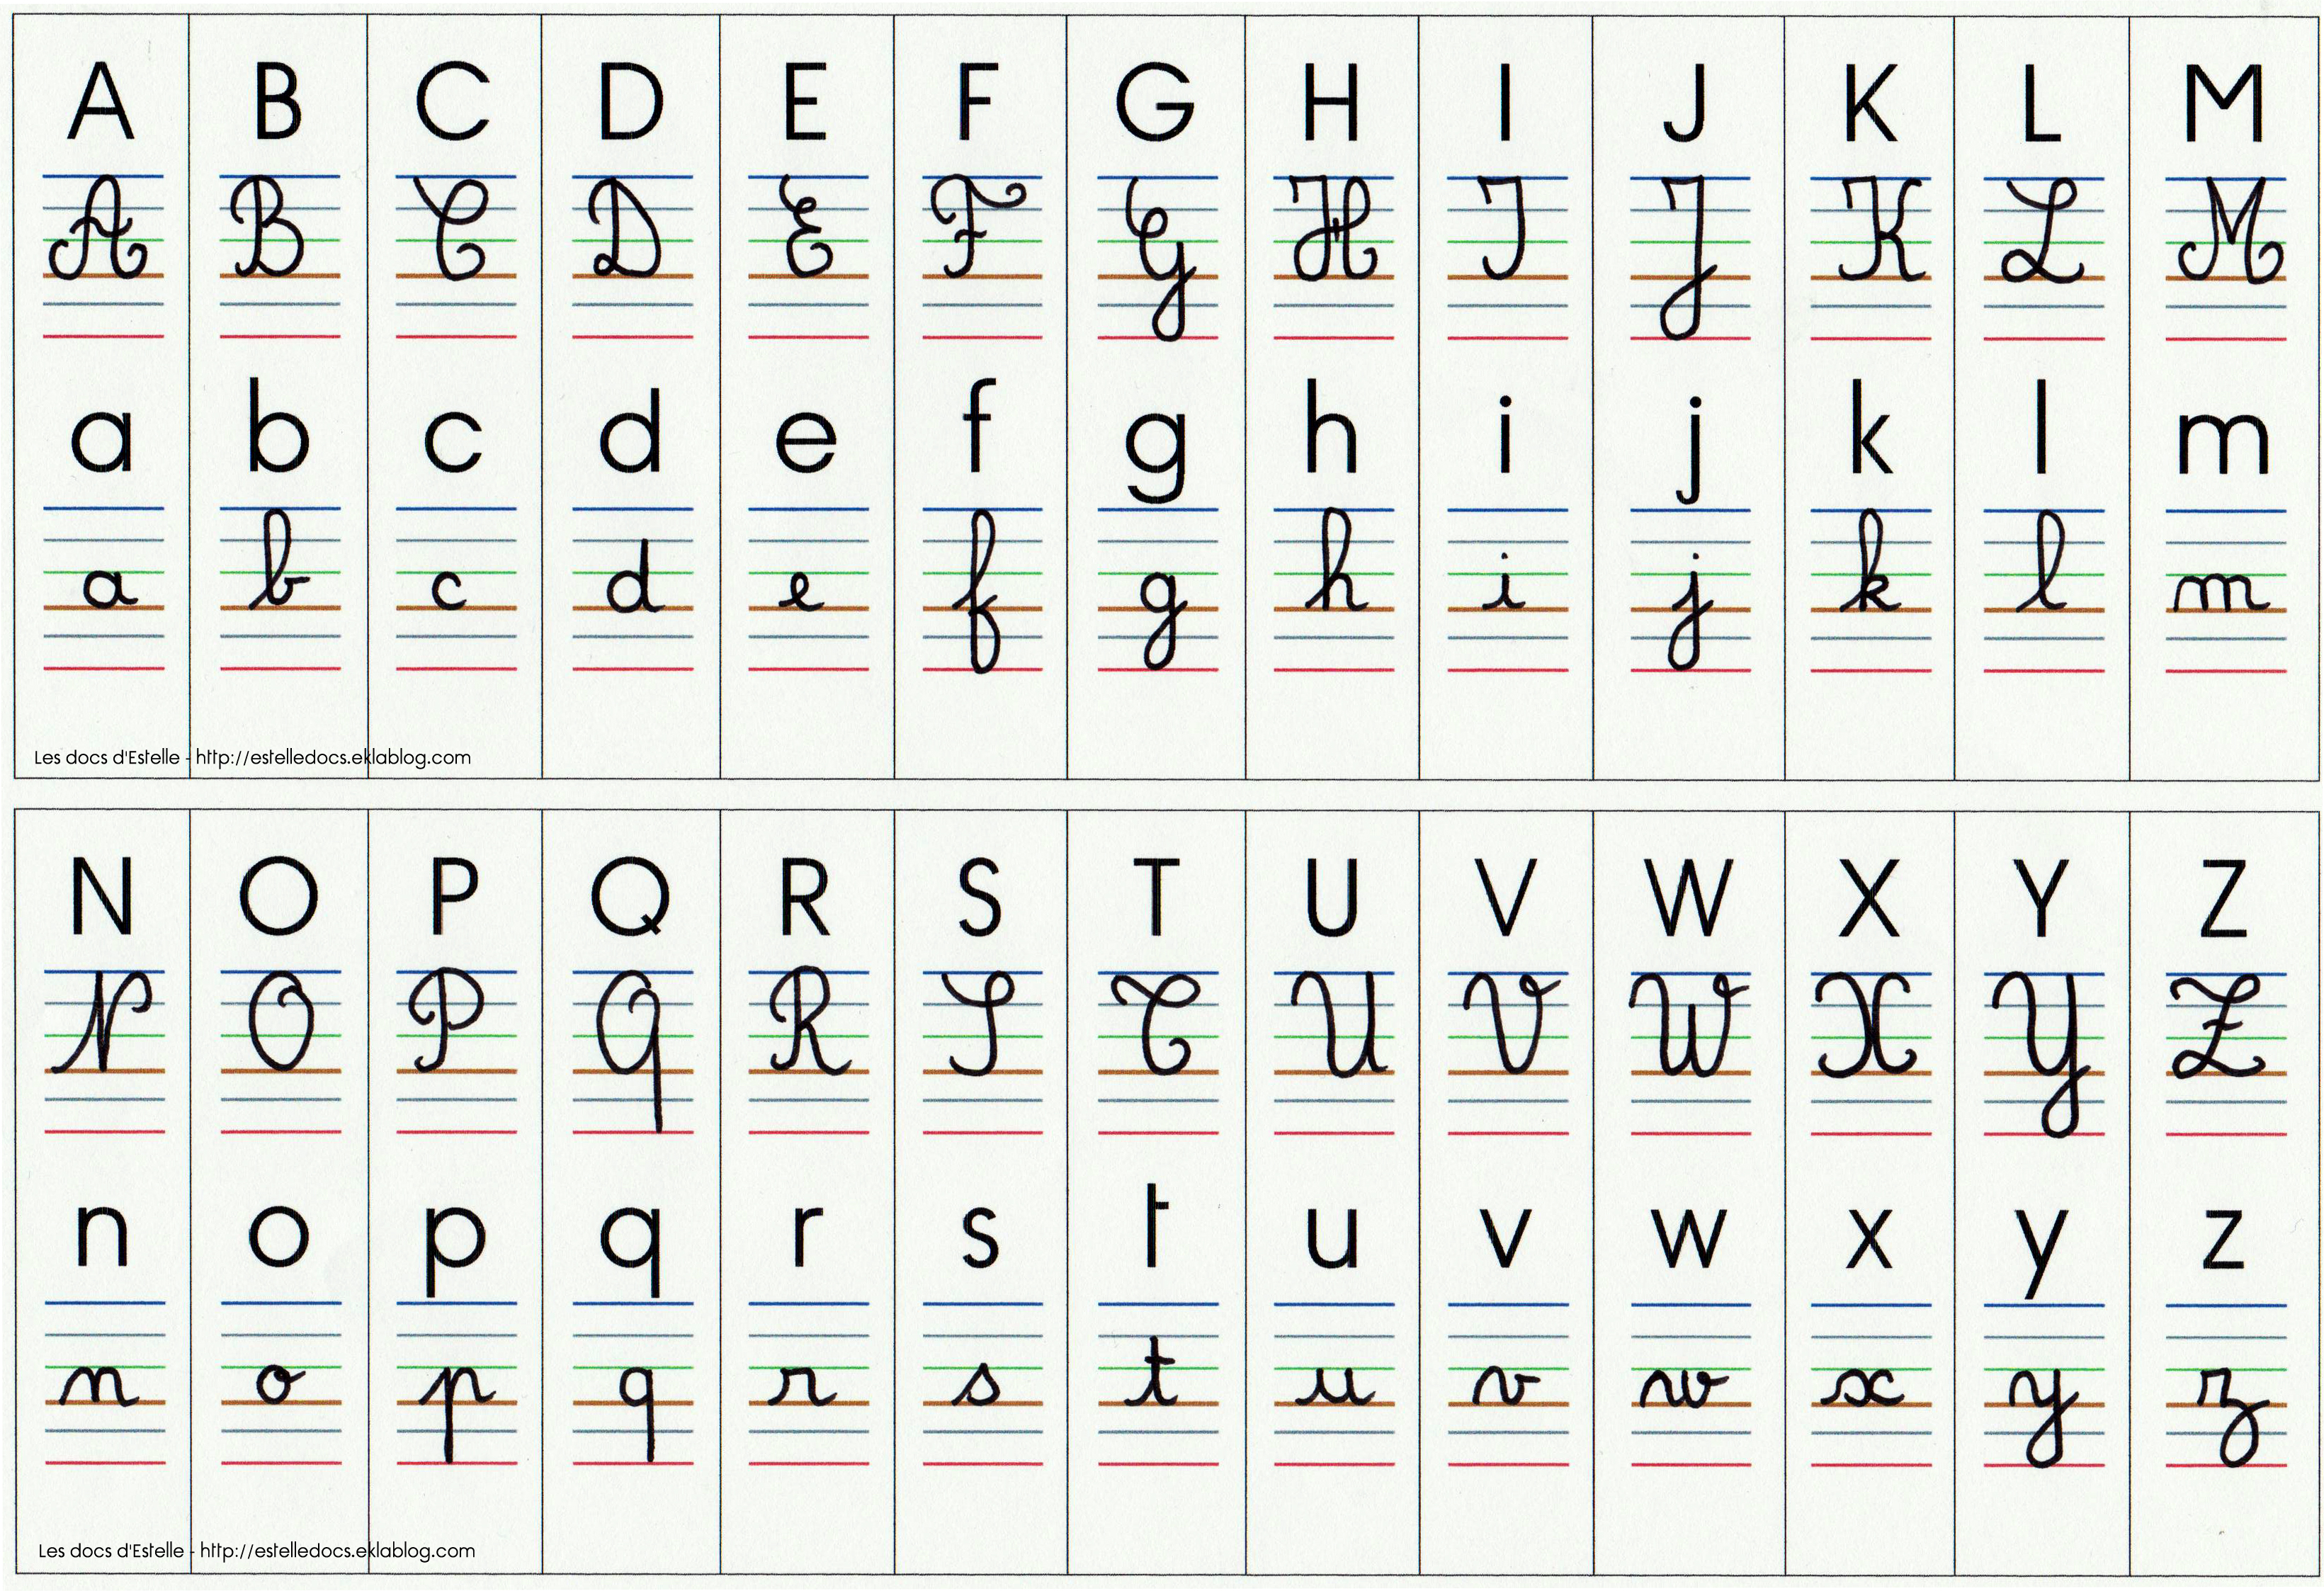 Affichage alphabet 4 écritures - Les docs d'Estelle